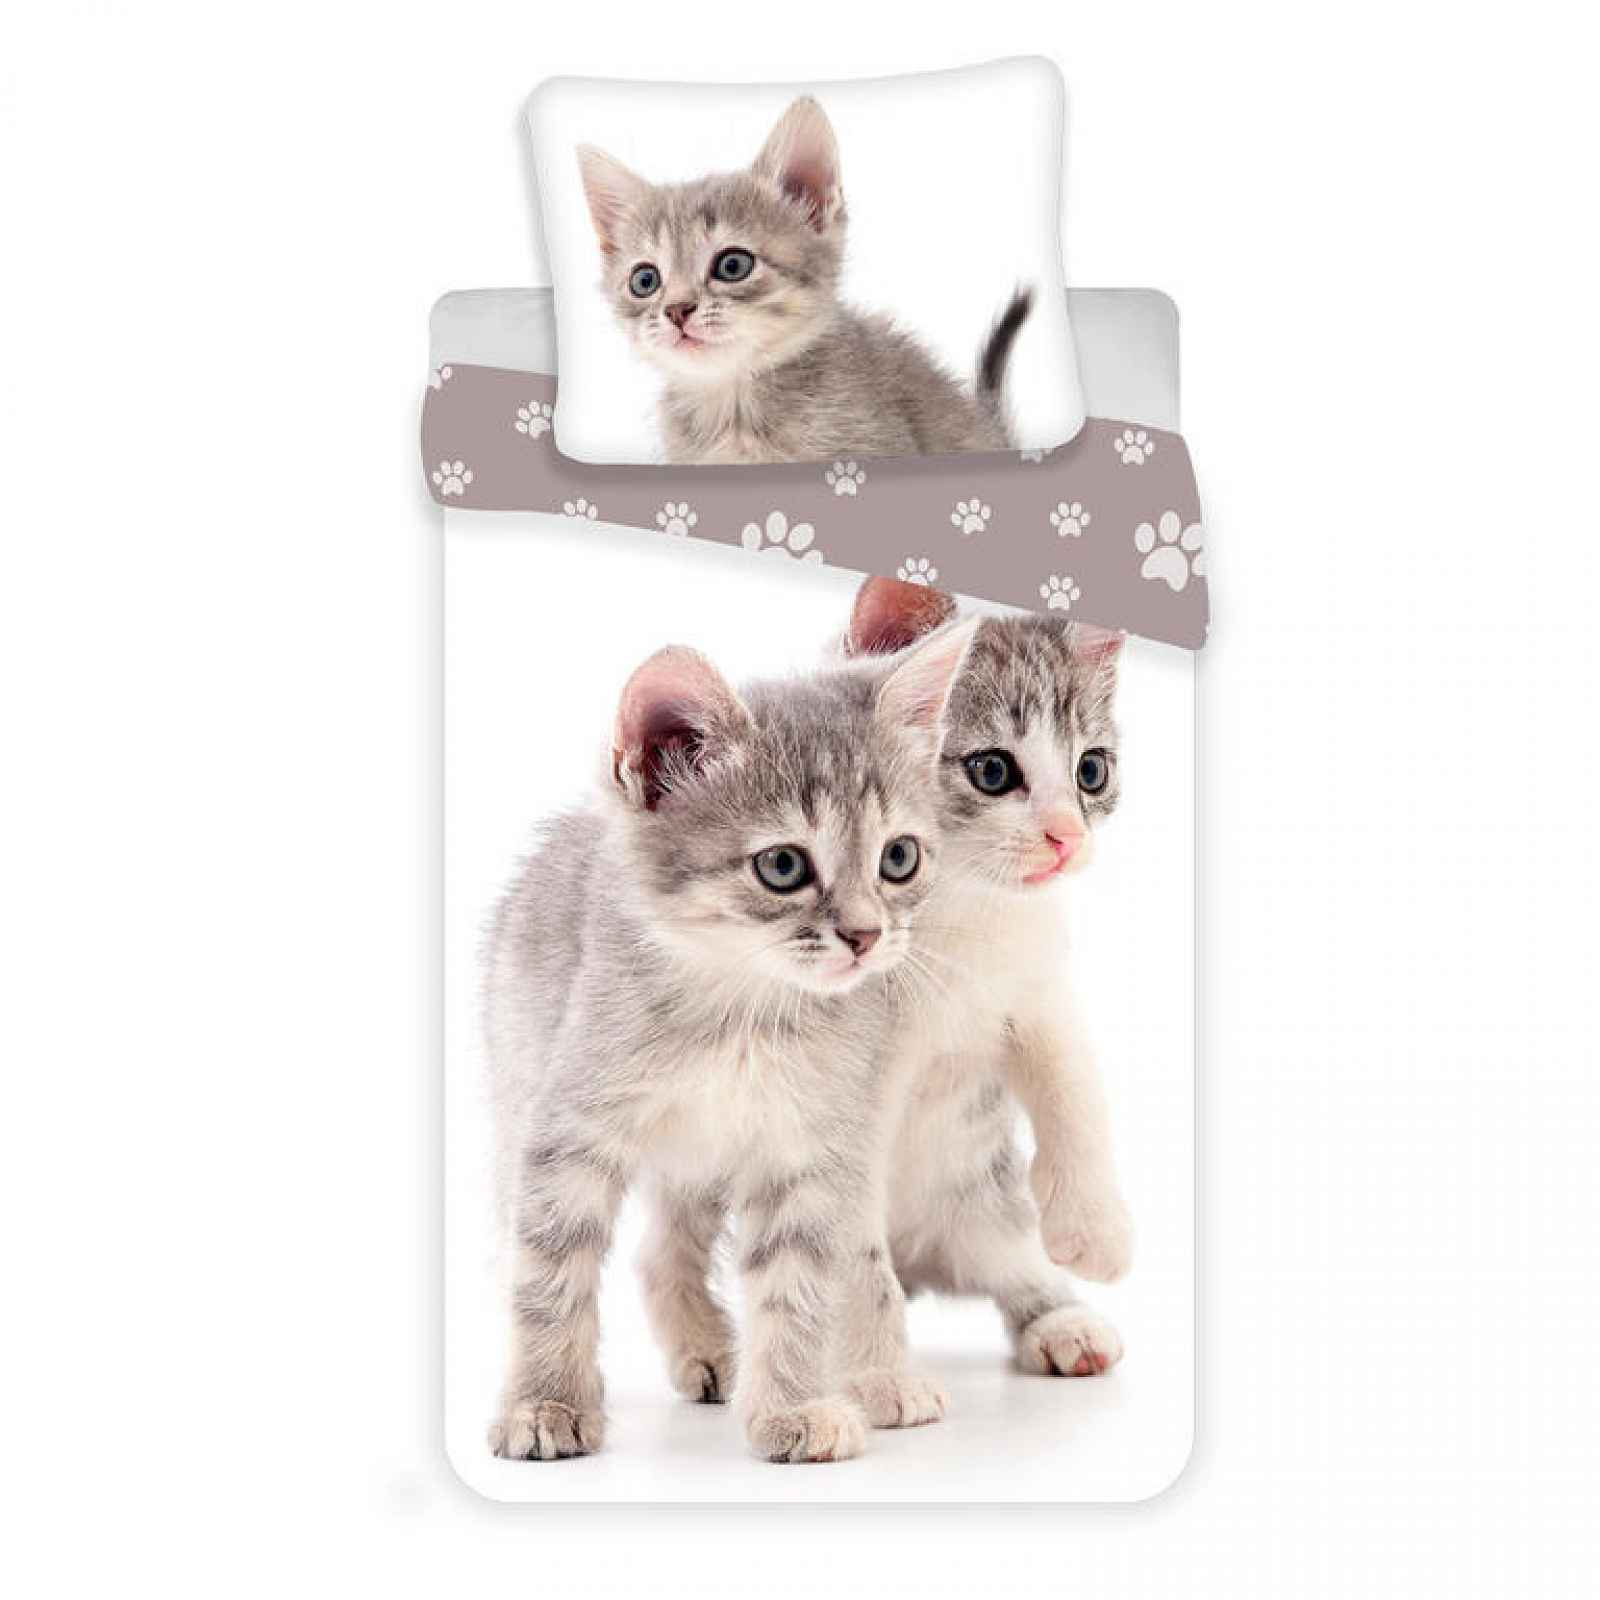 Jerry Fabrics Povlečení fototisk Kitten-kočka grey 140x200, 70x90 cm